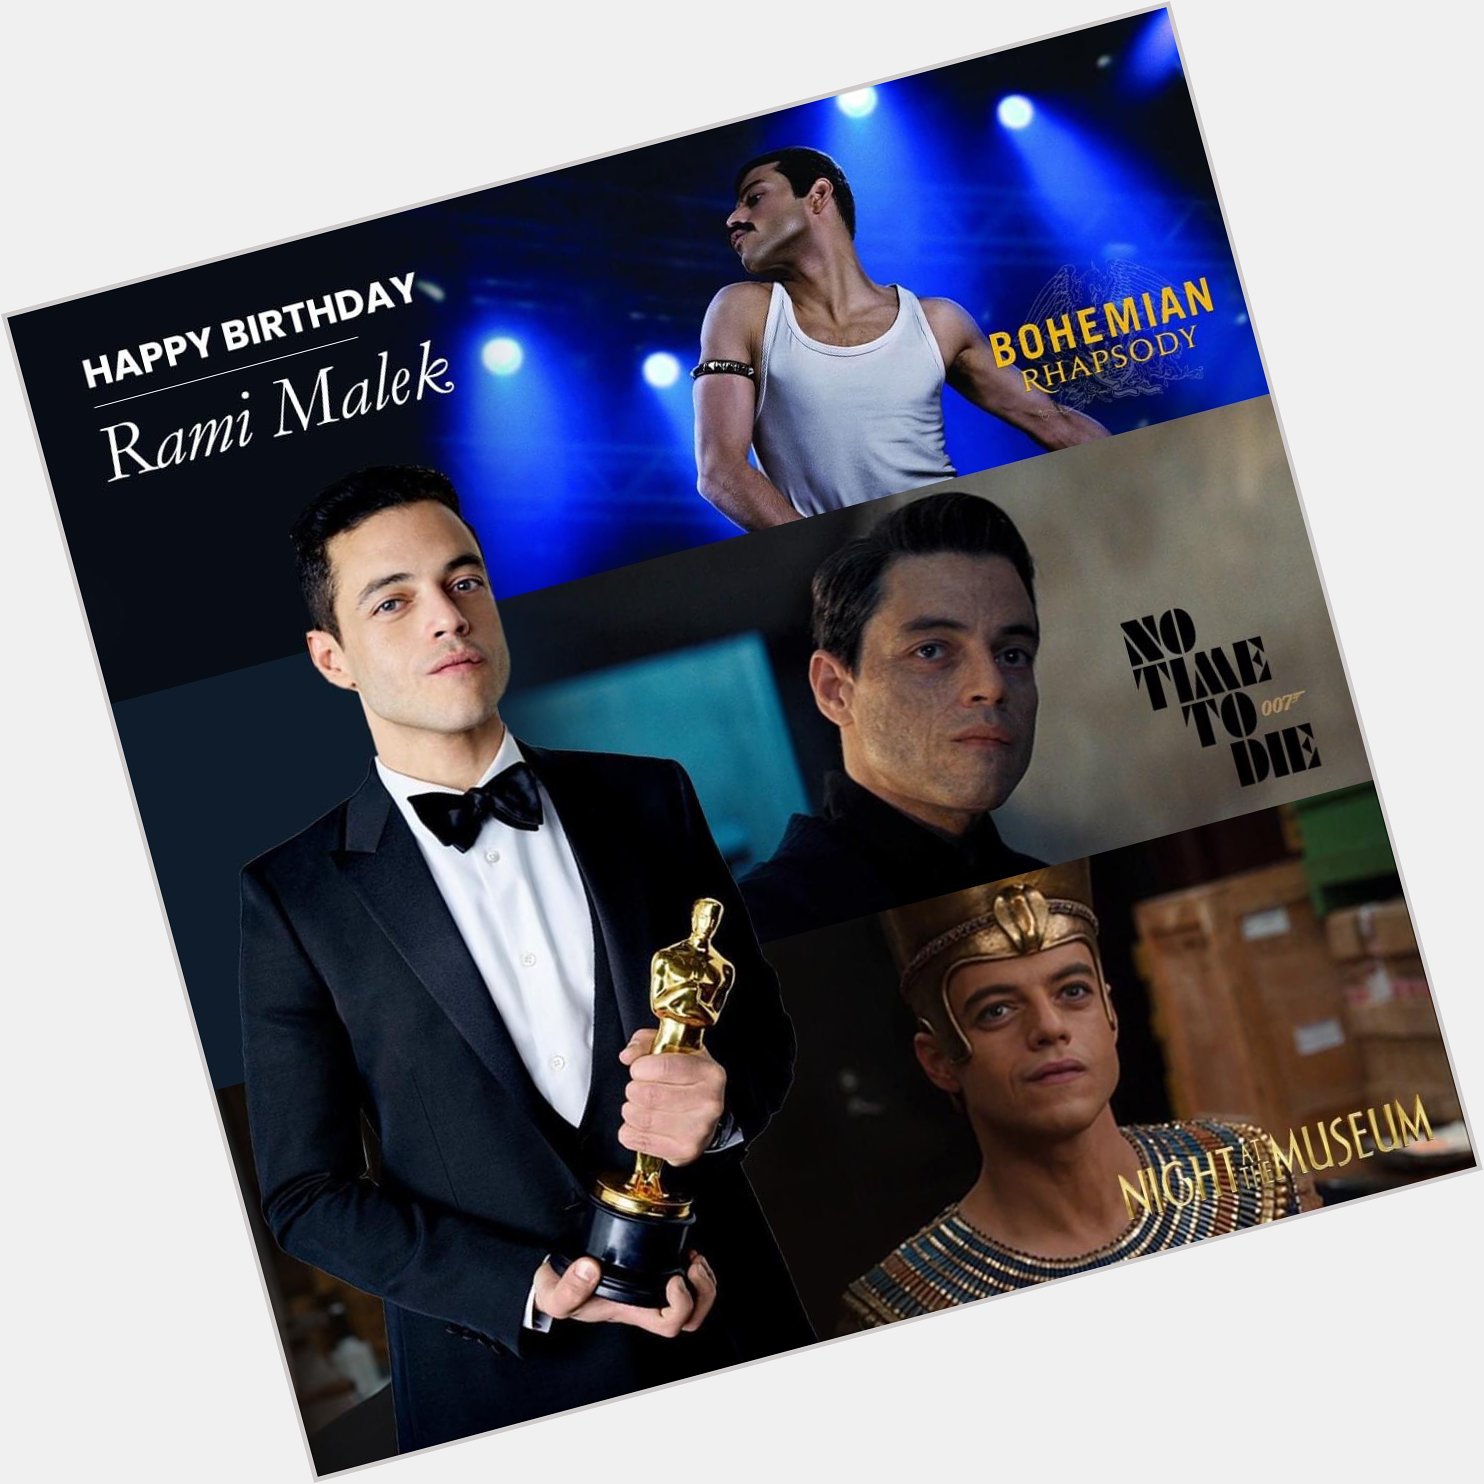 Happy Birthday Rami Malek!    